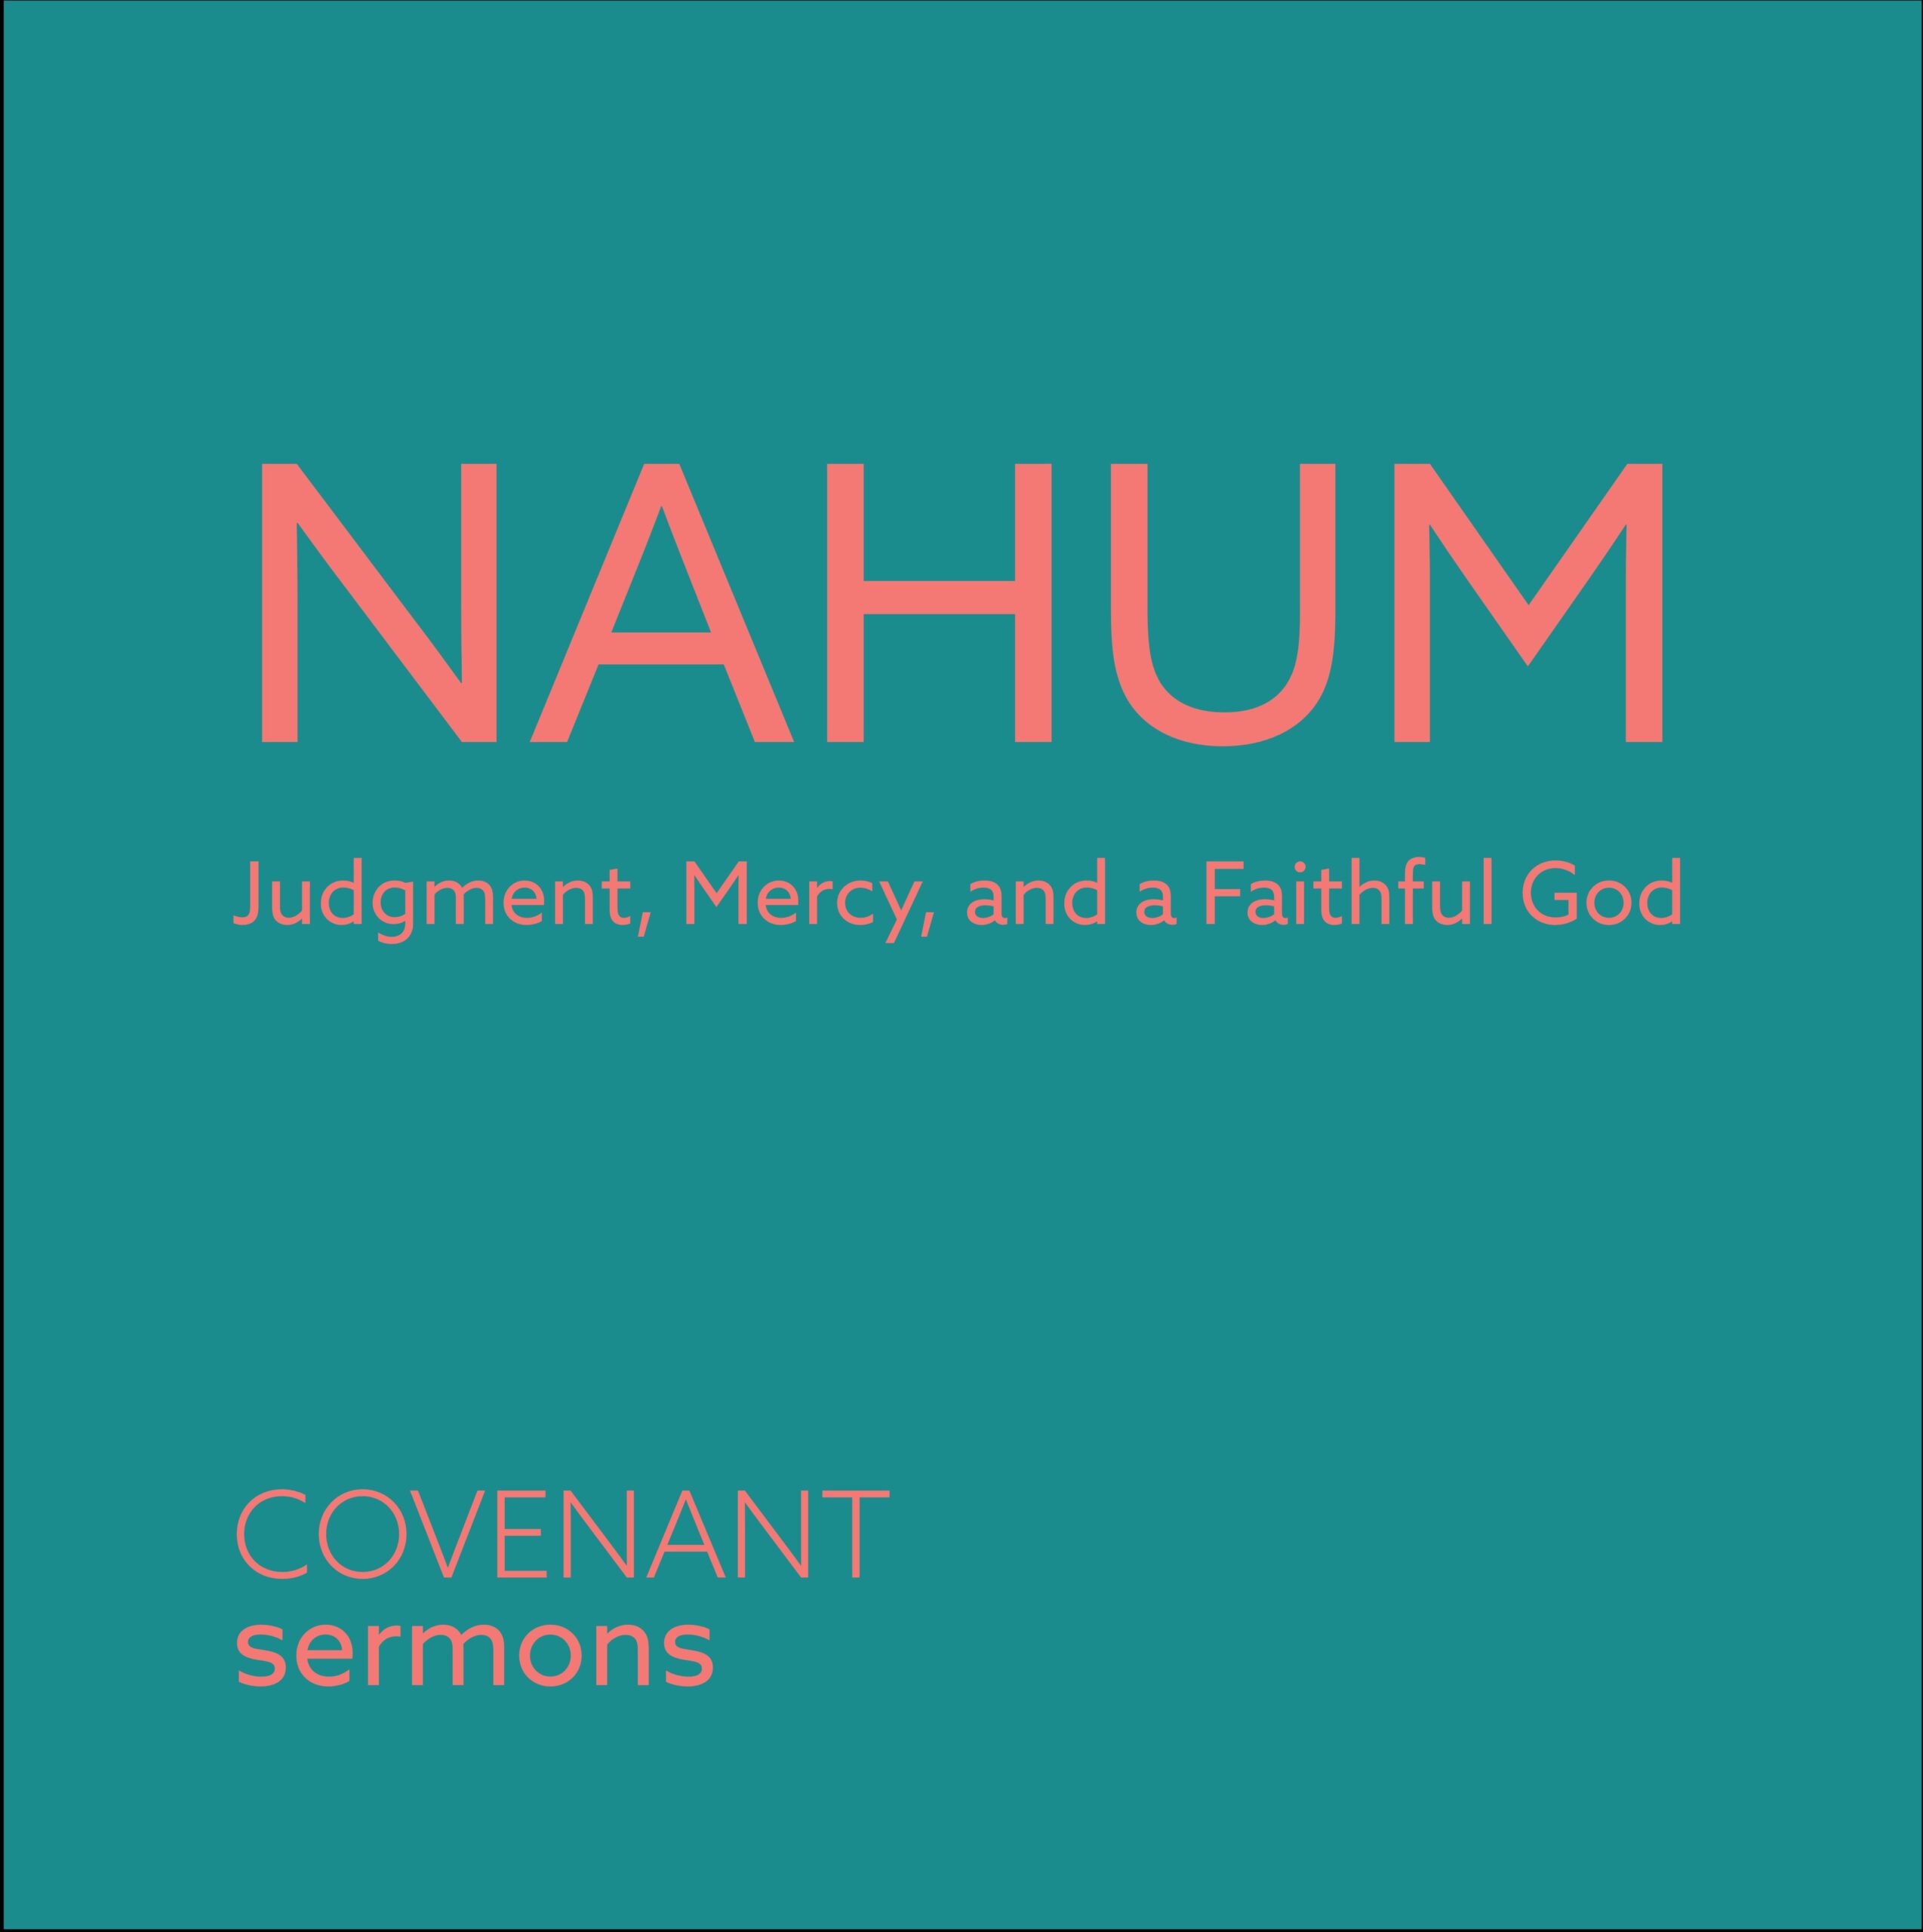 Glory in the Darkest Night | Nahum 2:1-13